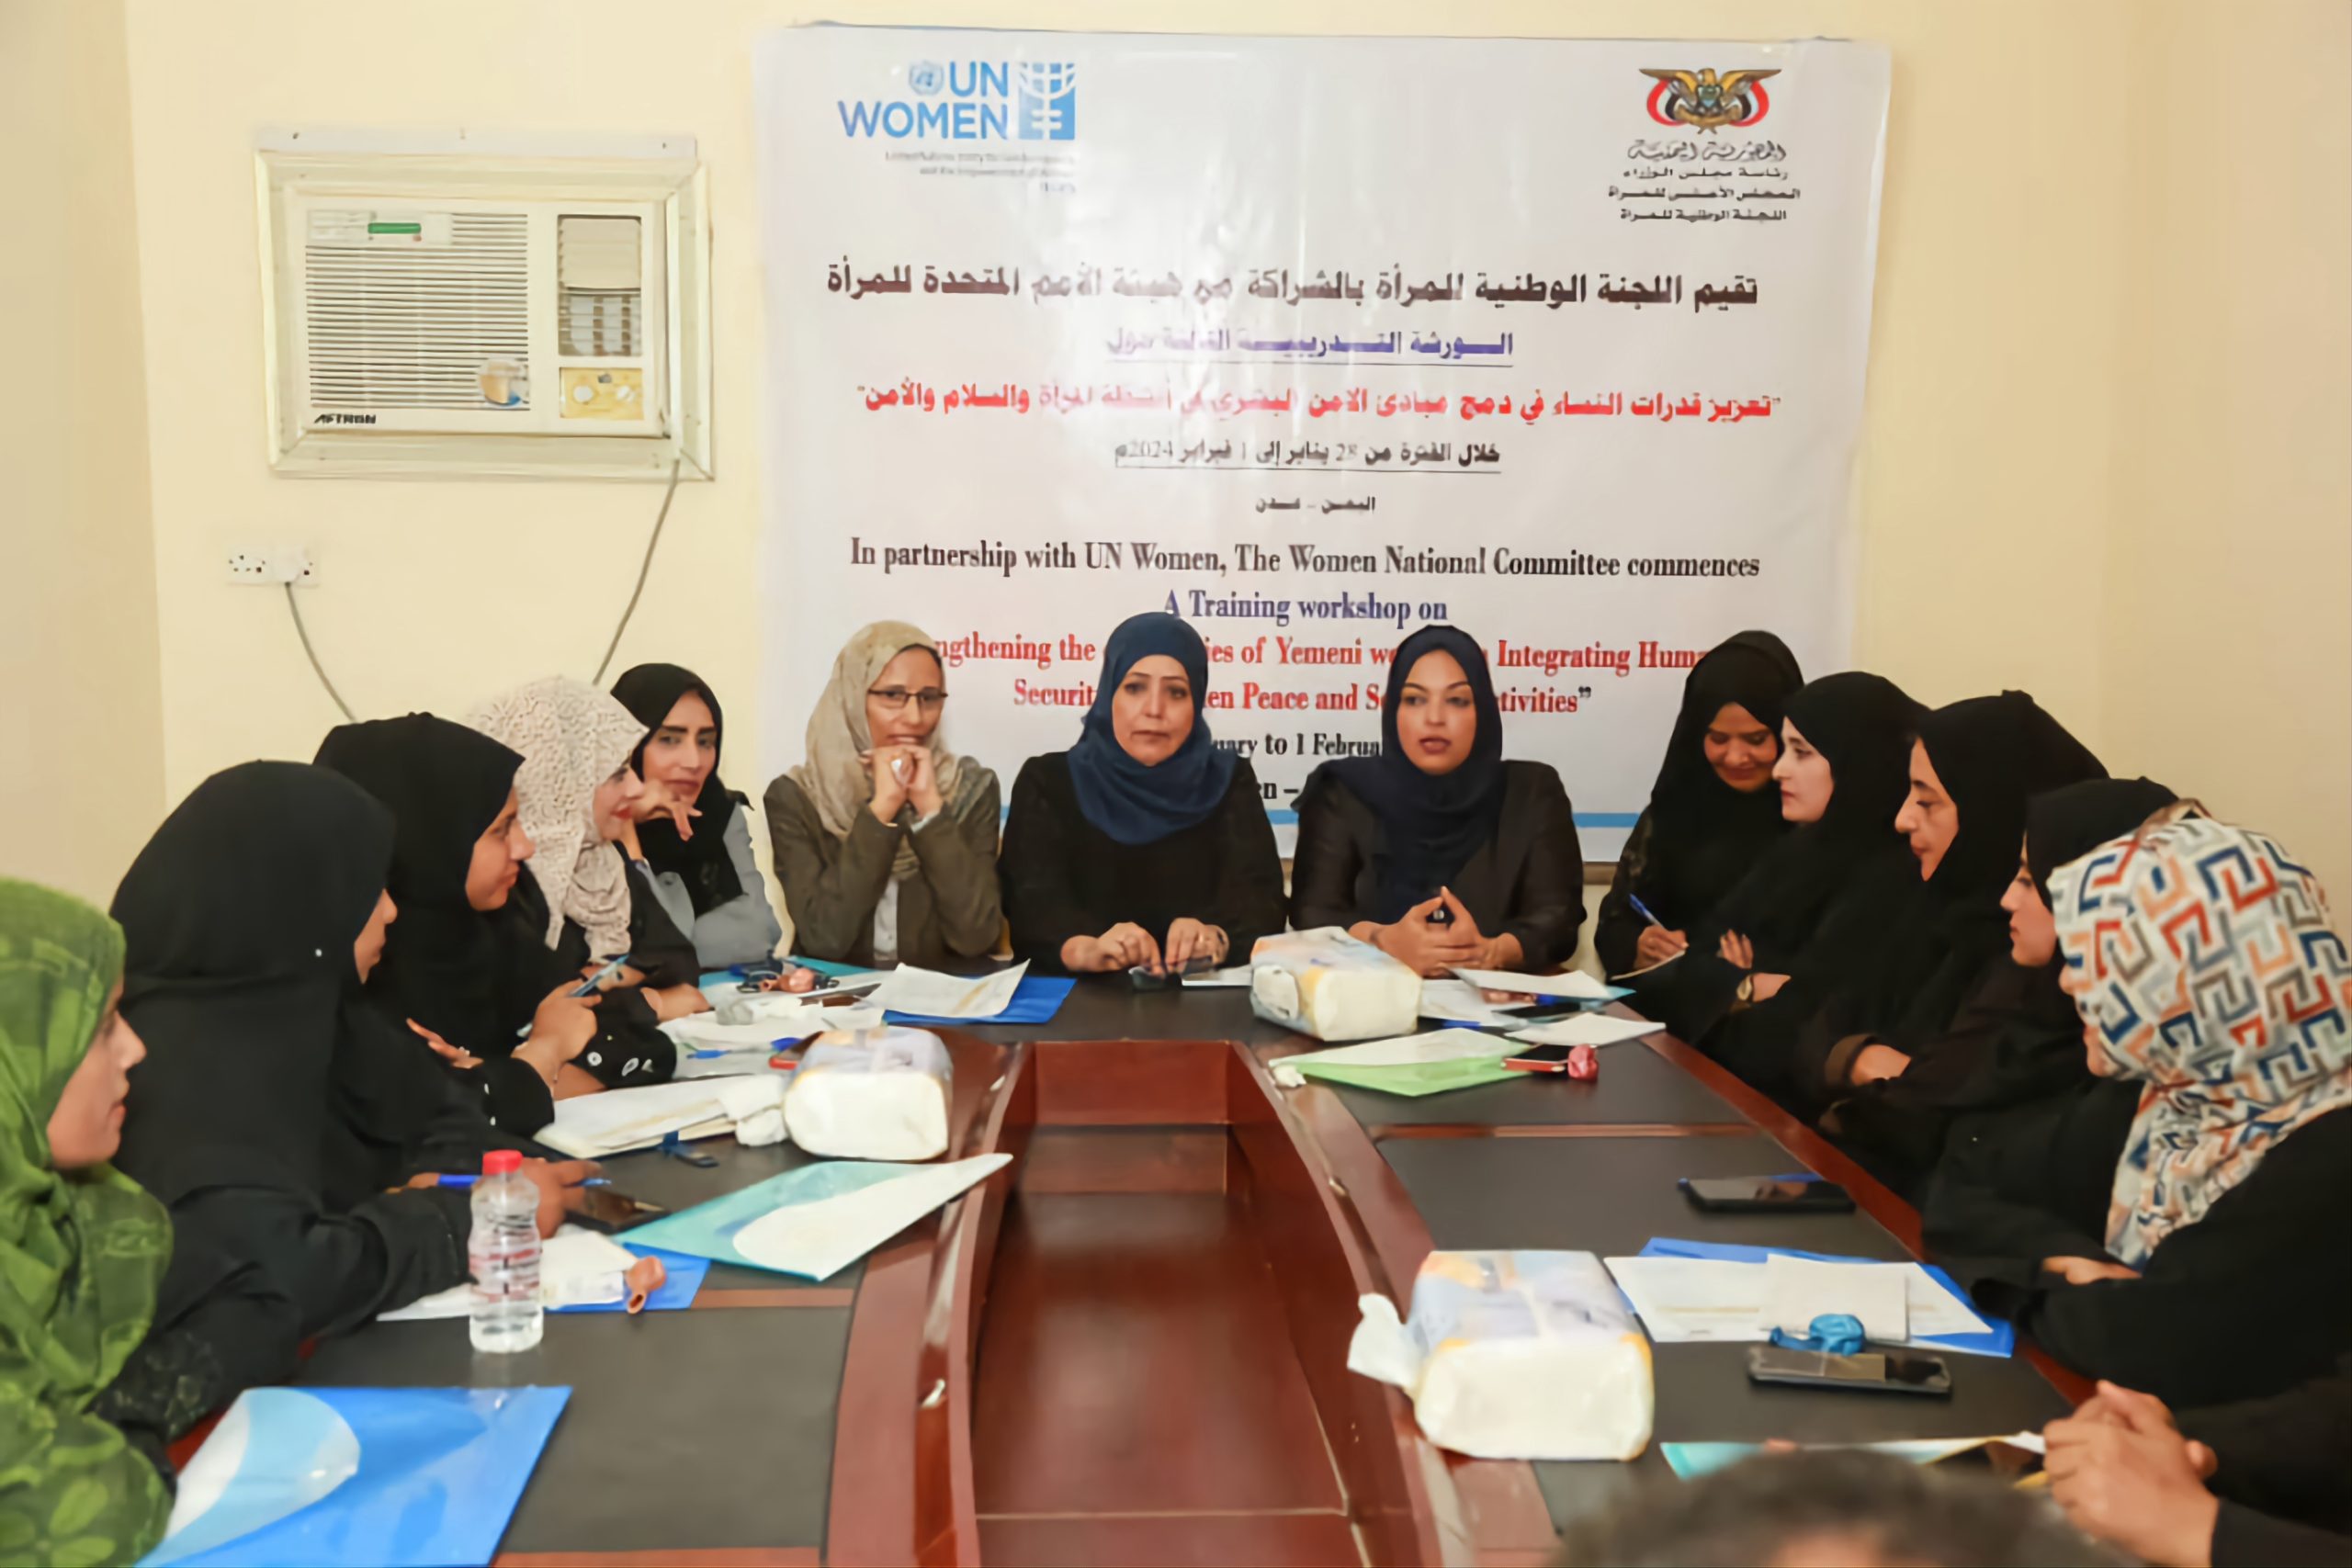 اللجنة الوطنية للمرأة تستأنف تدريب  نساء حول عملية بناء السلام